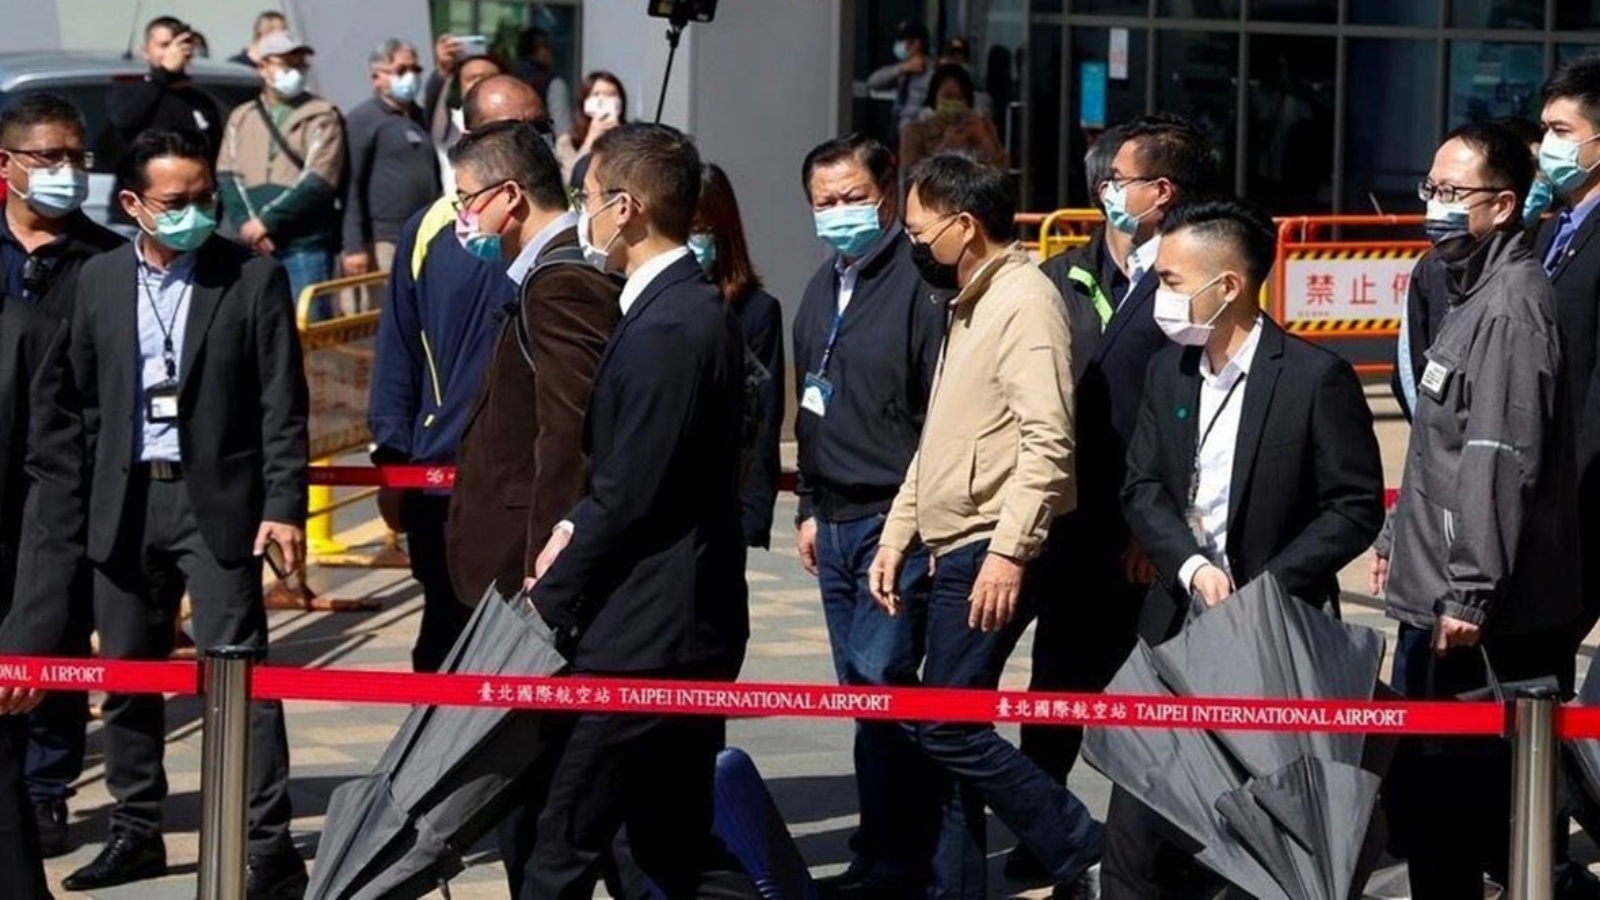 وصول مجموعة من المسؤولين من شنغهاي إلى تايوان السبت في أول زيارة يقوم بها سياسيون صينيون للجزيرة